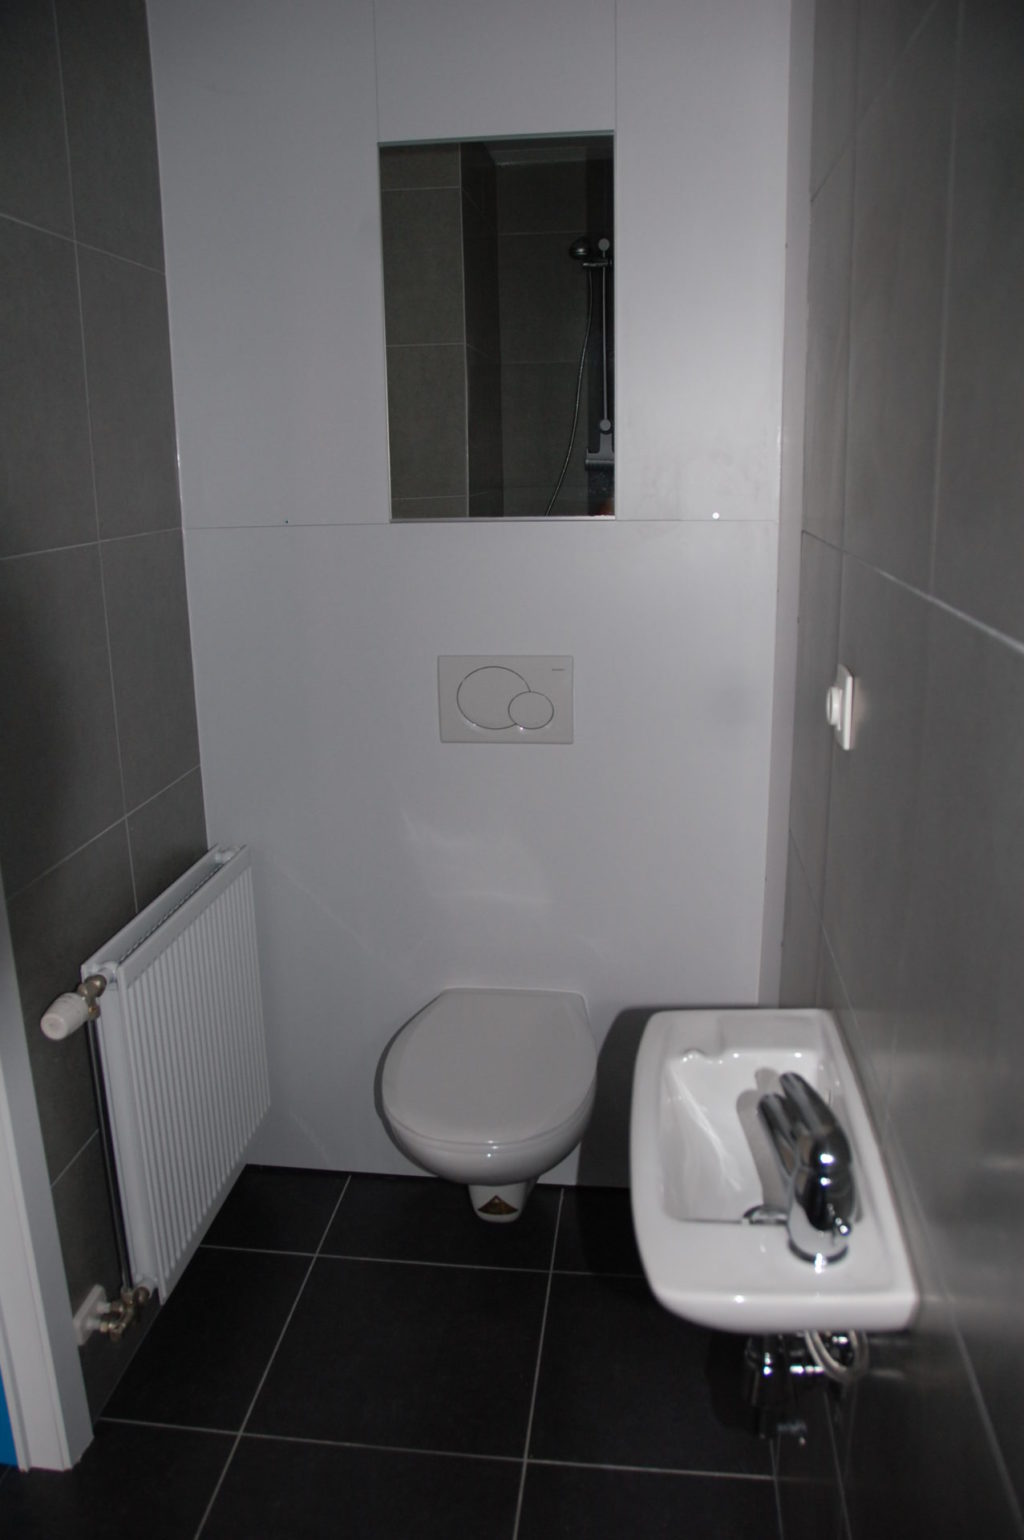 Sint-Jozefsstraat 30 - Kamer 13 - Toilet en lavabo